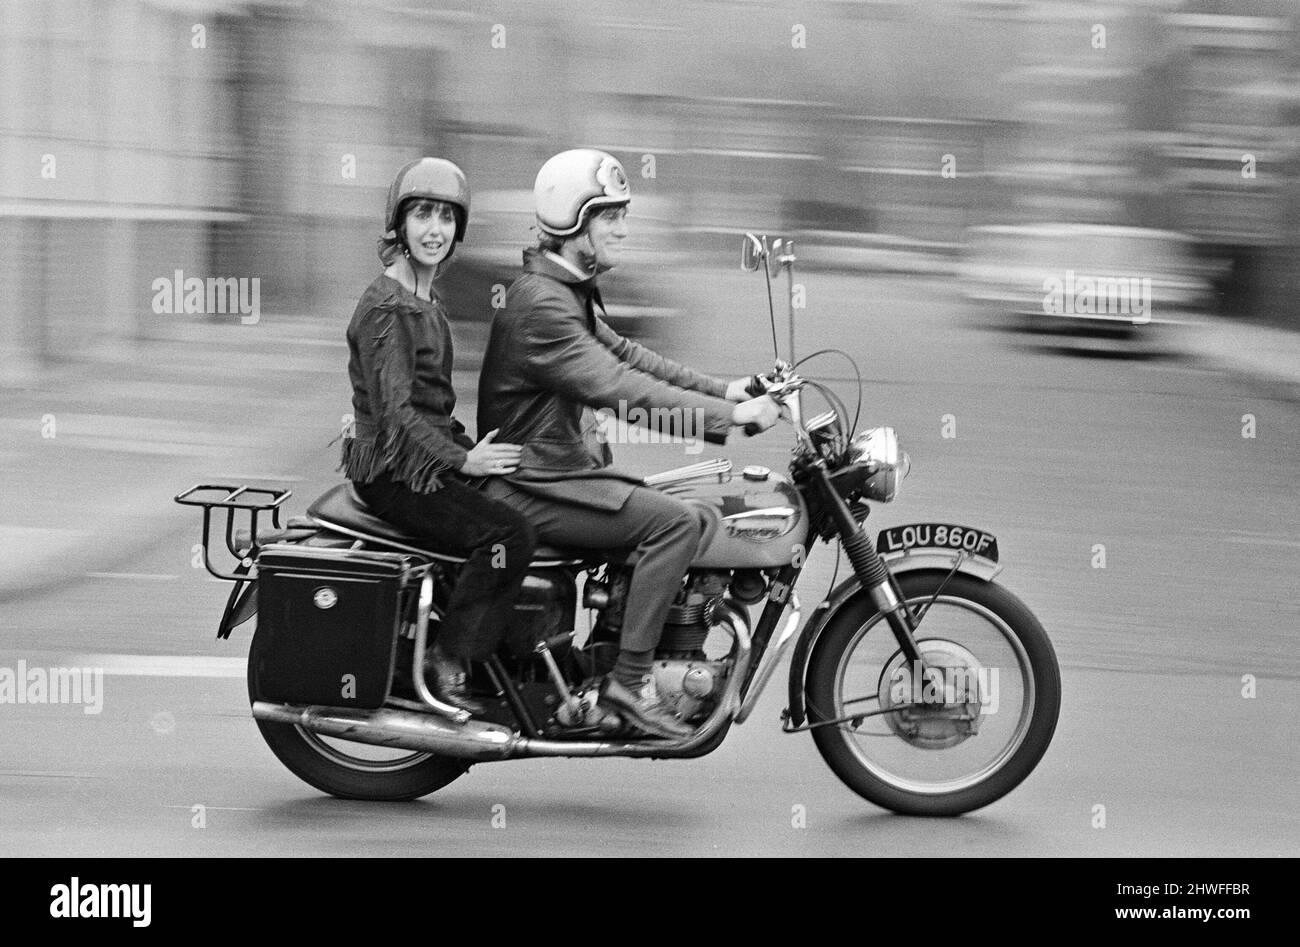 L'attrice una Stubbs e suo marito Nicky Henson arrivano al teatro Young Vic per una prova di vestito sulla loro moto. Stanno comparendo nel gioco "la storia del soldato". 27th settembre 1970. Foto Stock